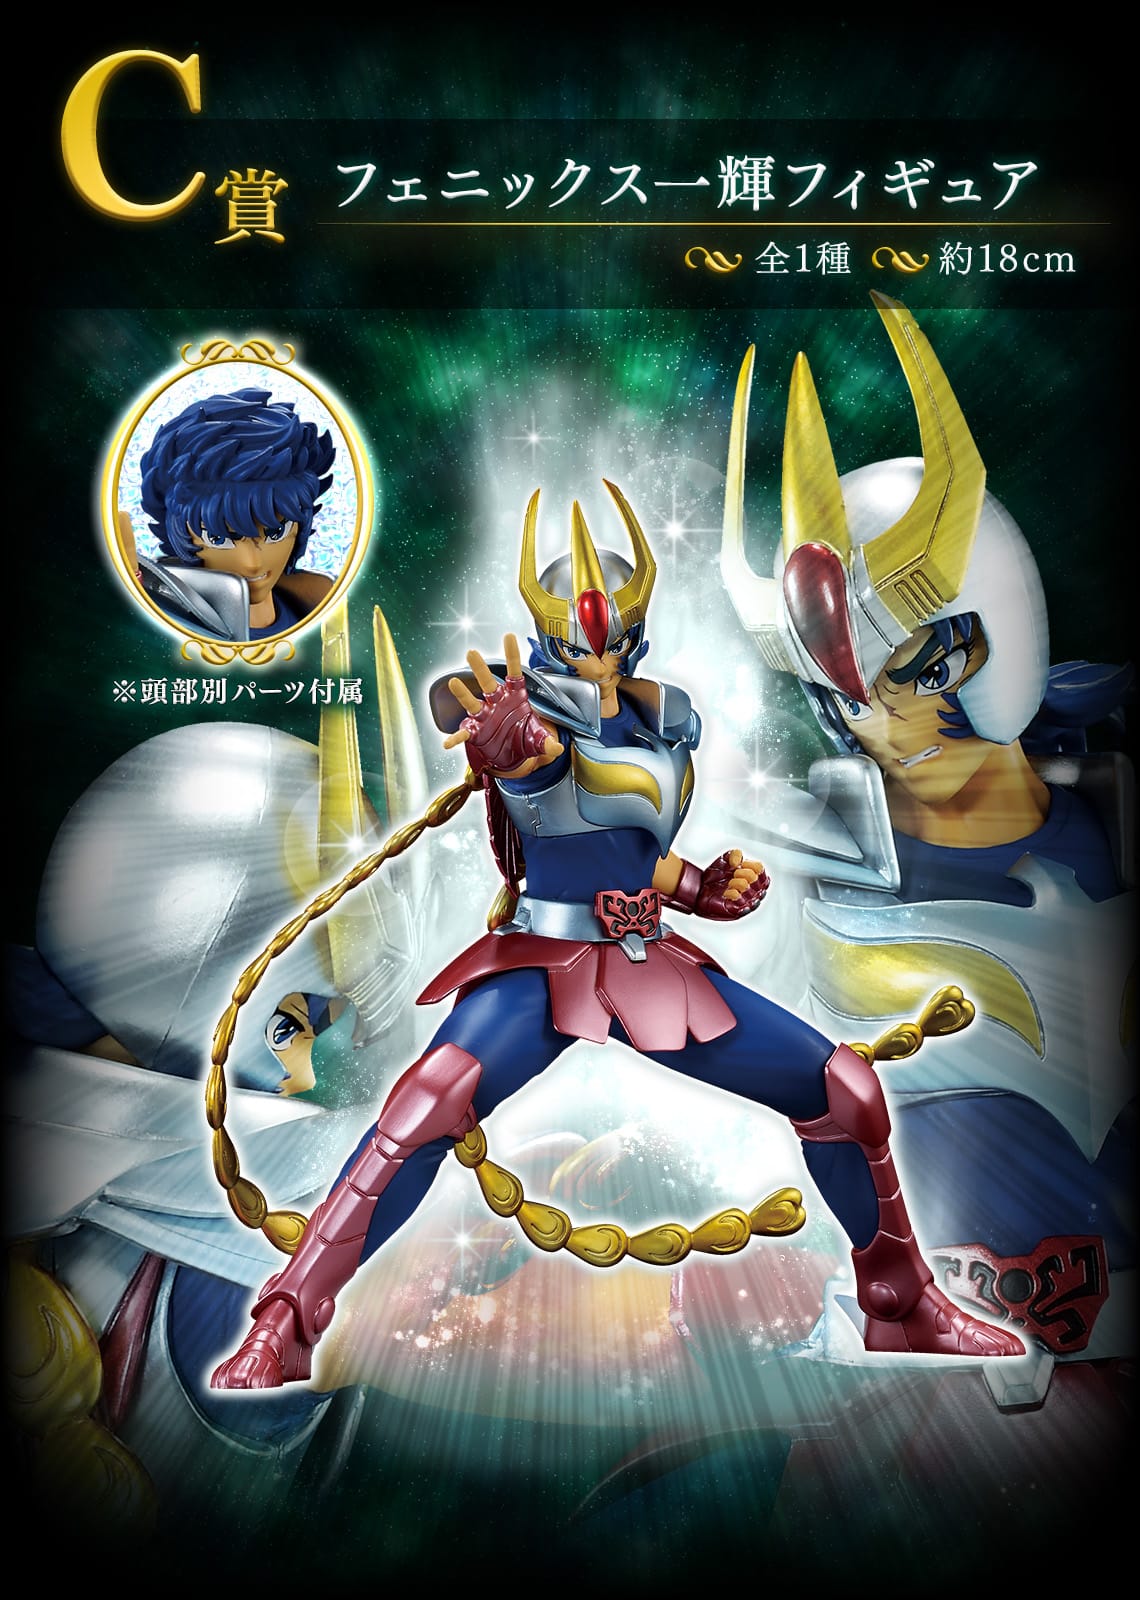 聖闘士星矢 サガ・一輝らのフィギュアが当たる一番くじ 4月3日より発売!